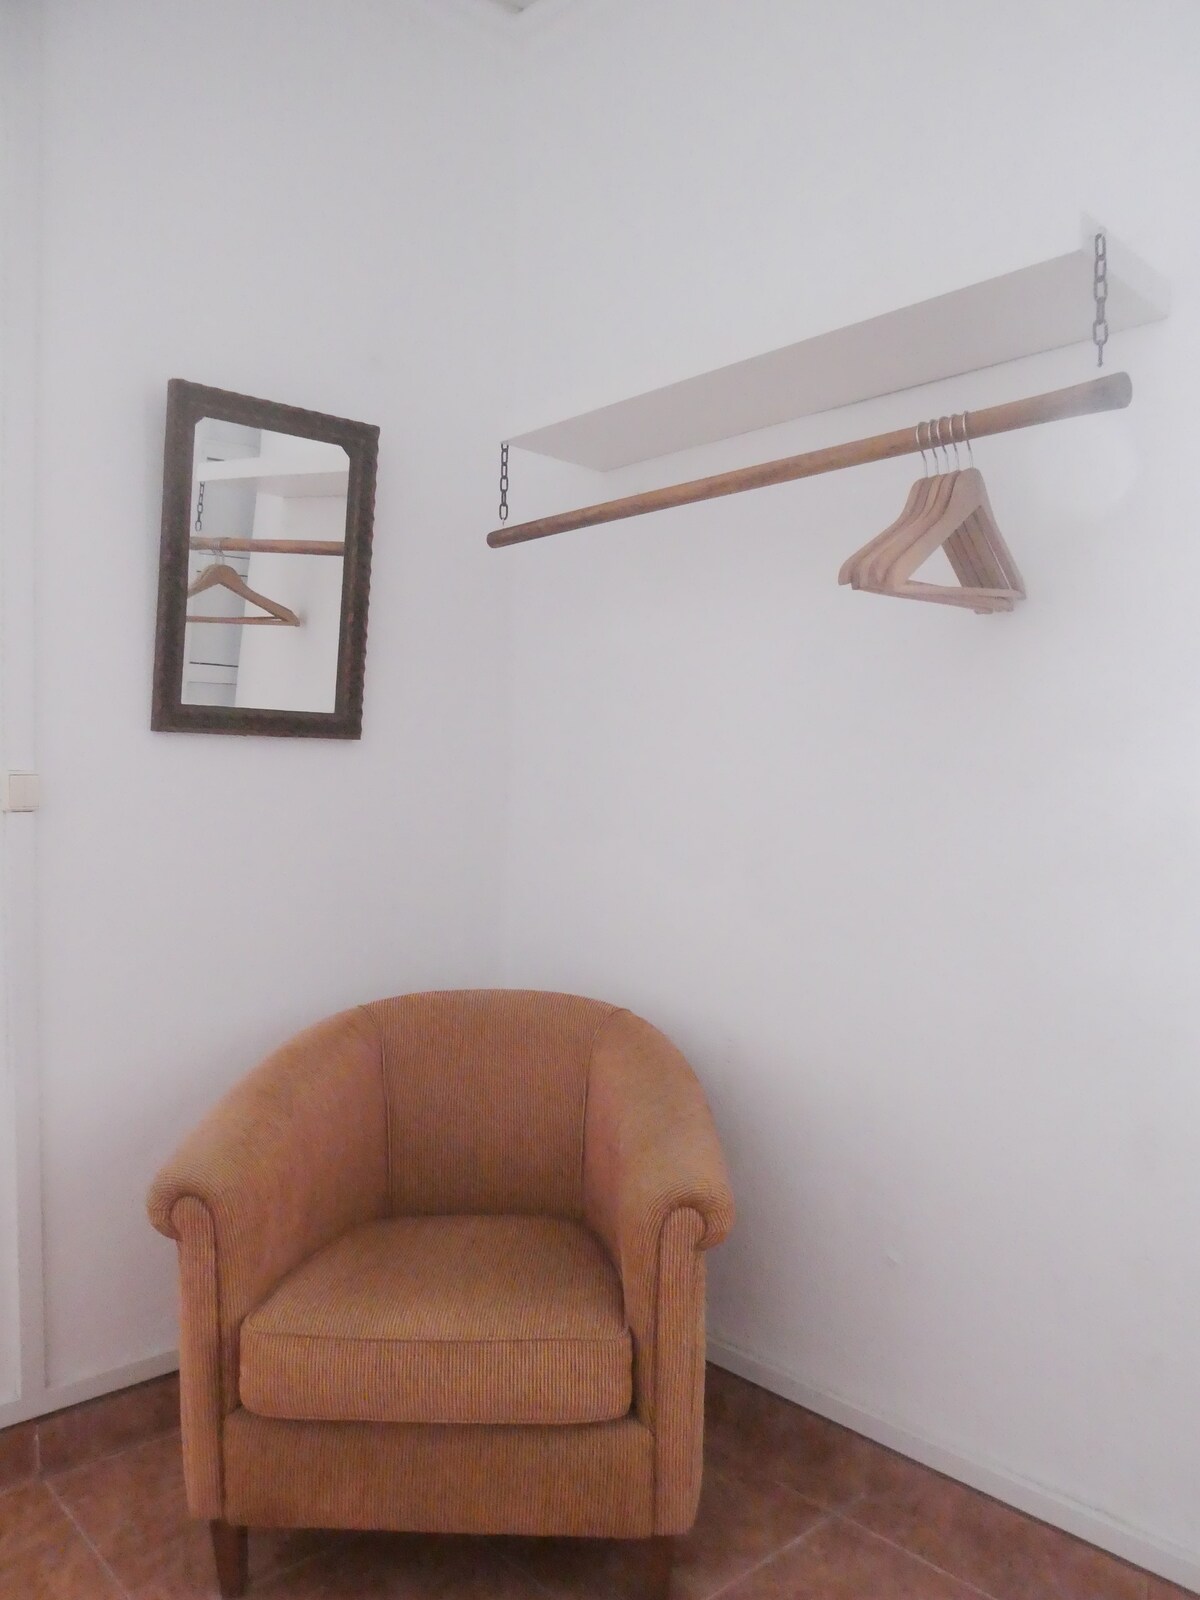 Basalto 's Room: Mistérios Surf Shack